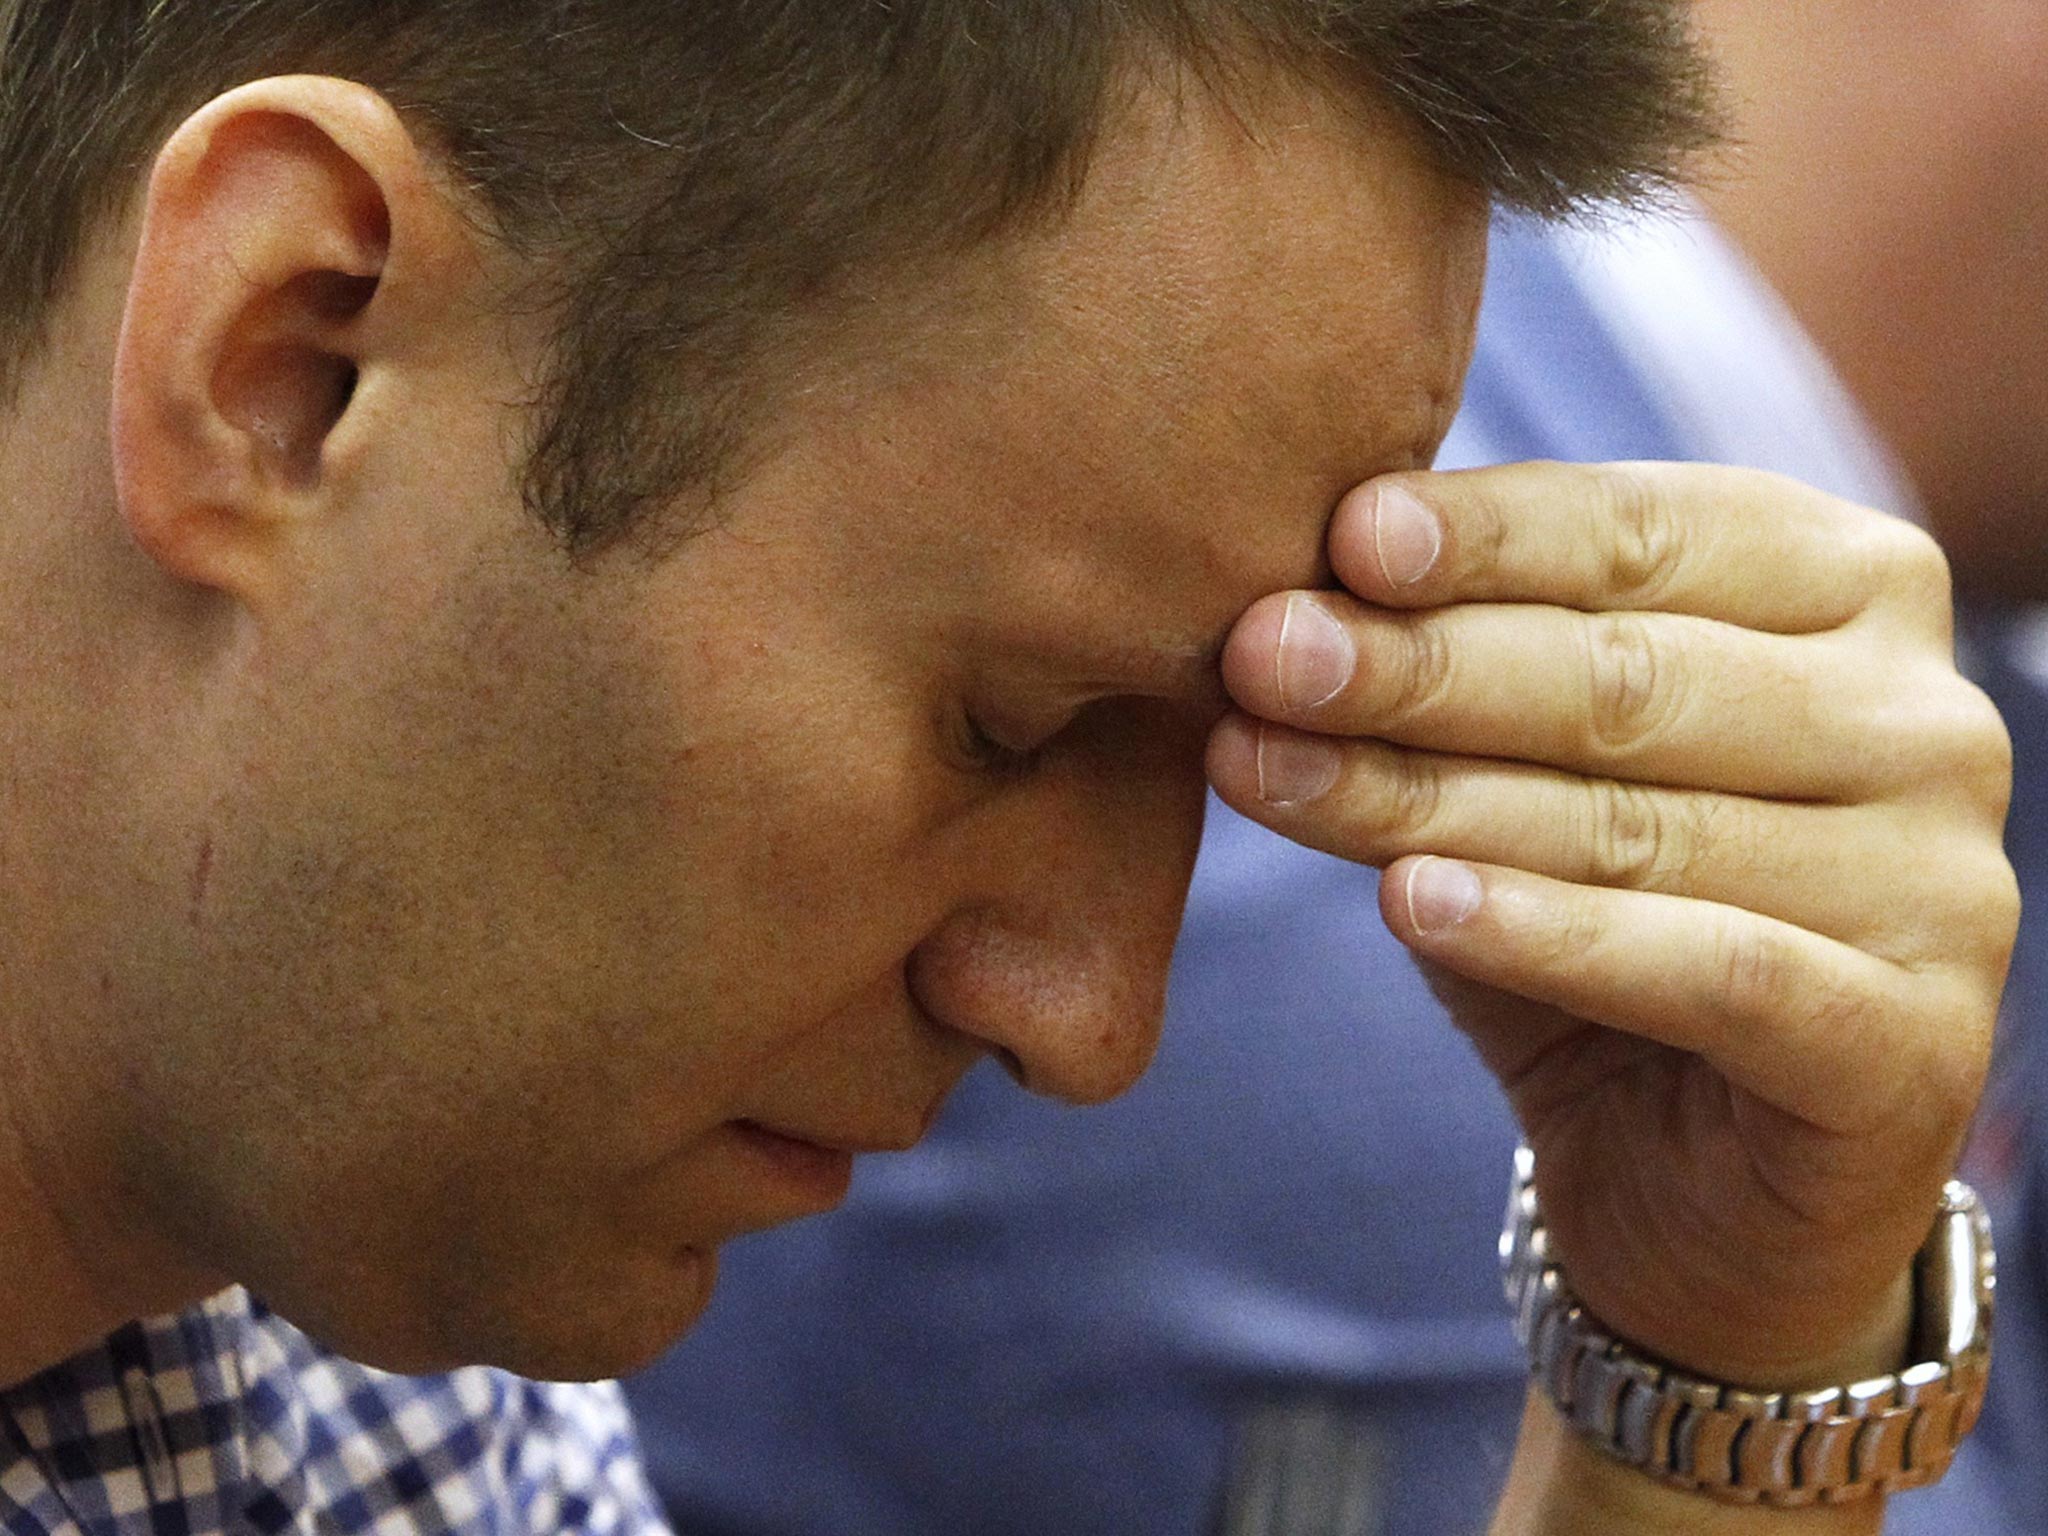 Russia temporarily freed Alexei Navalny today